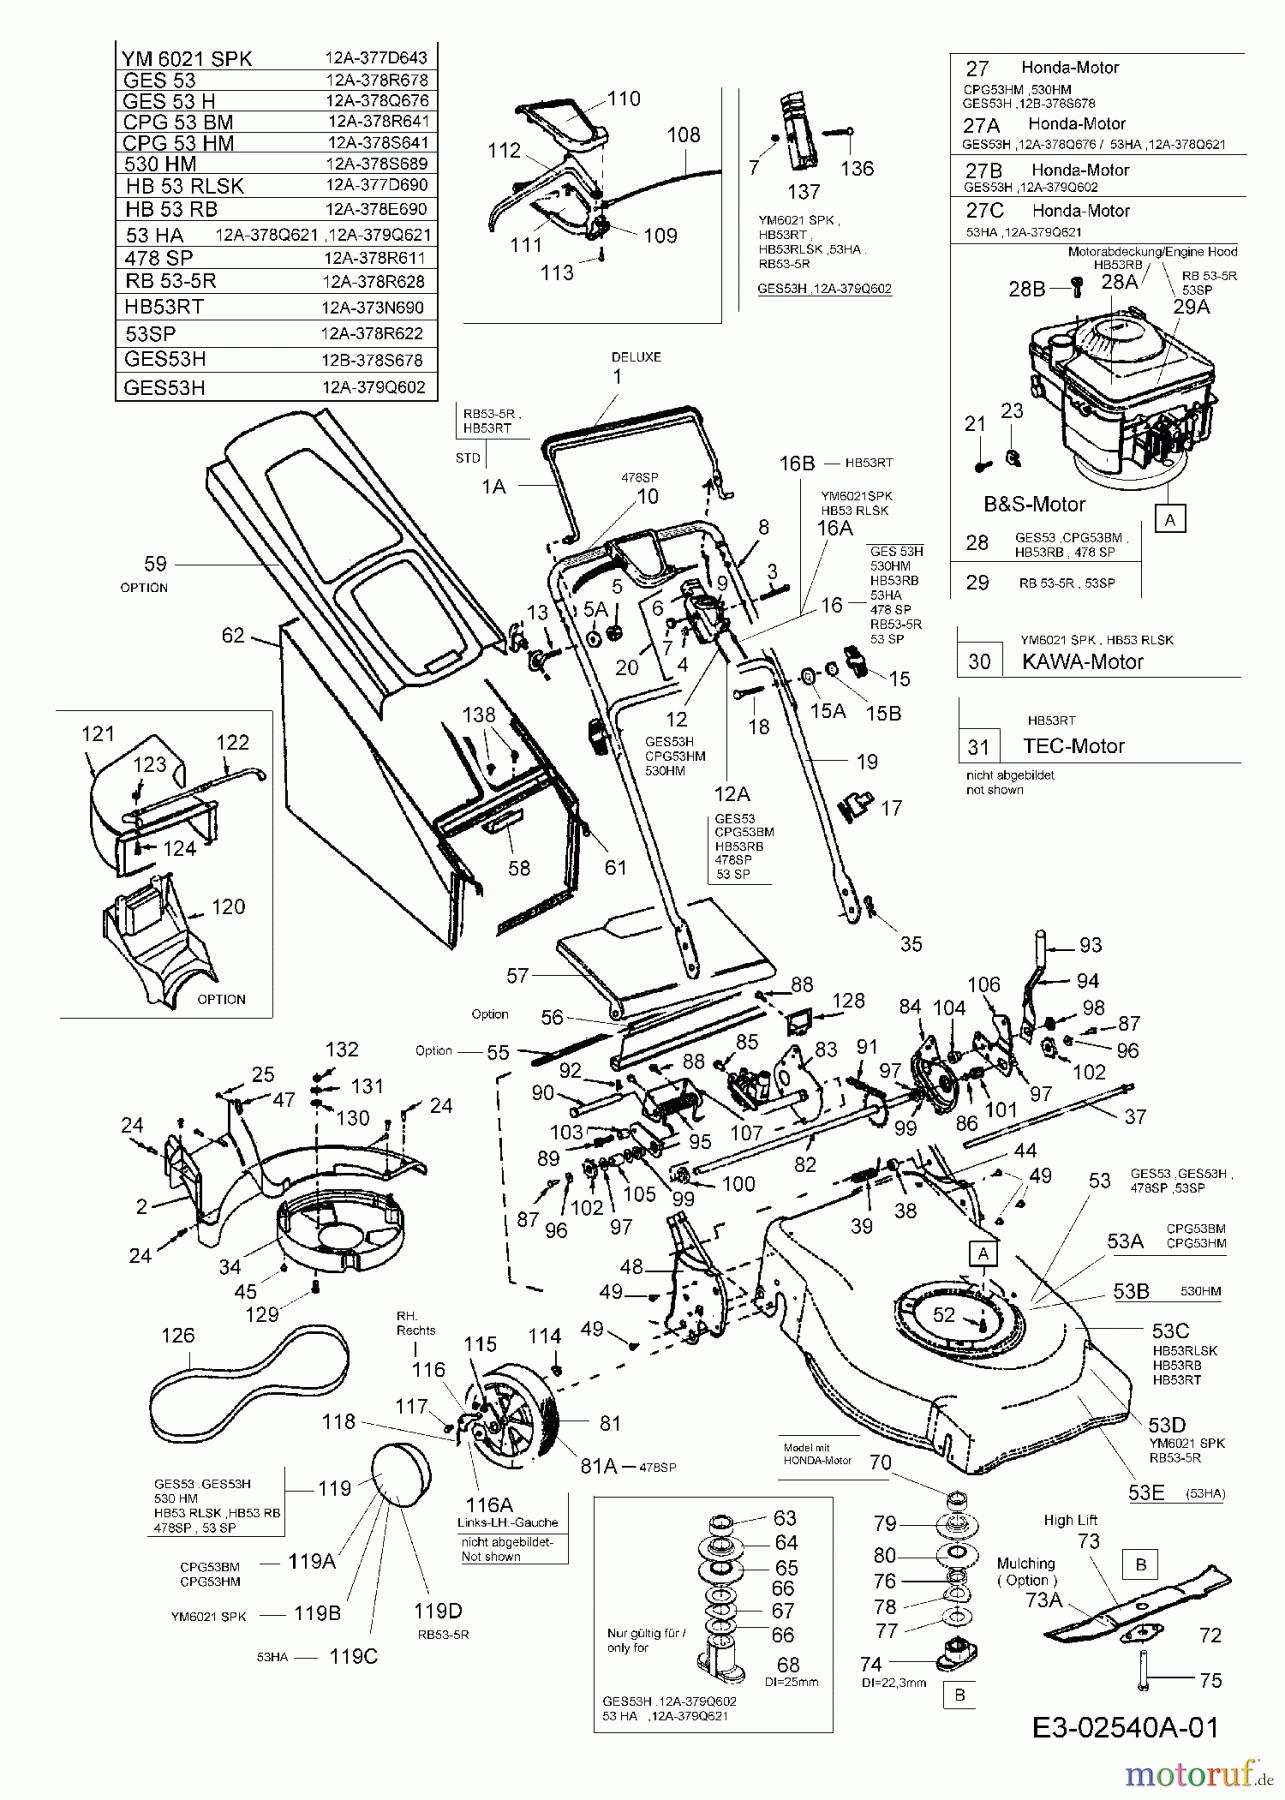  MTD Motormäher mit Antrieb GES 53 H 12A-378Q676  (2005) Grundgerät